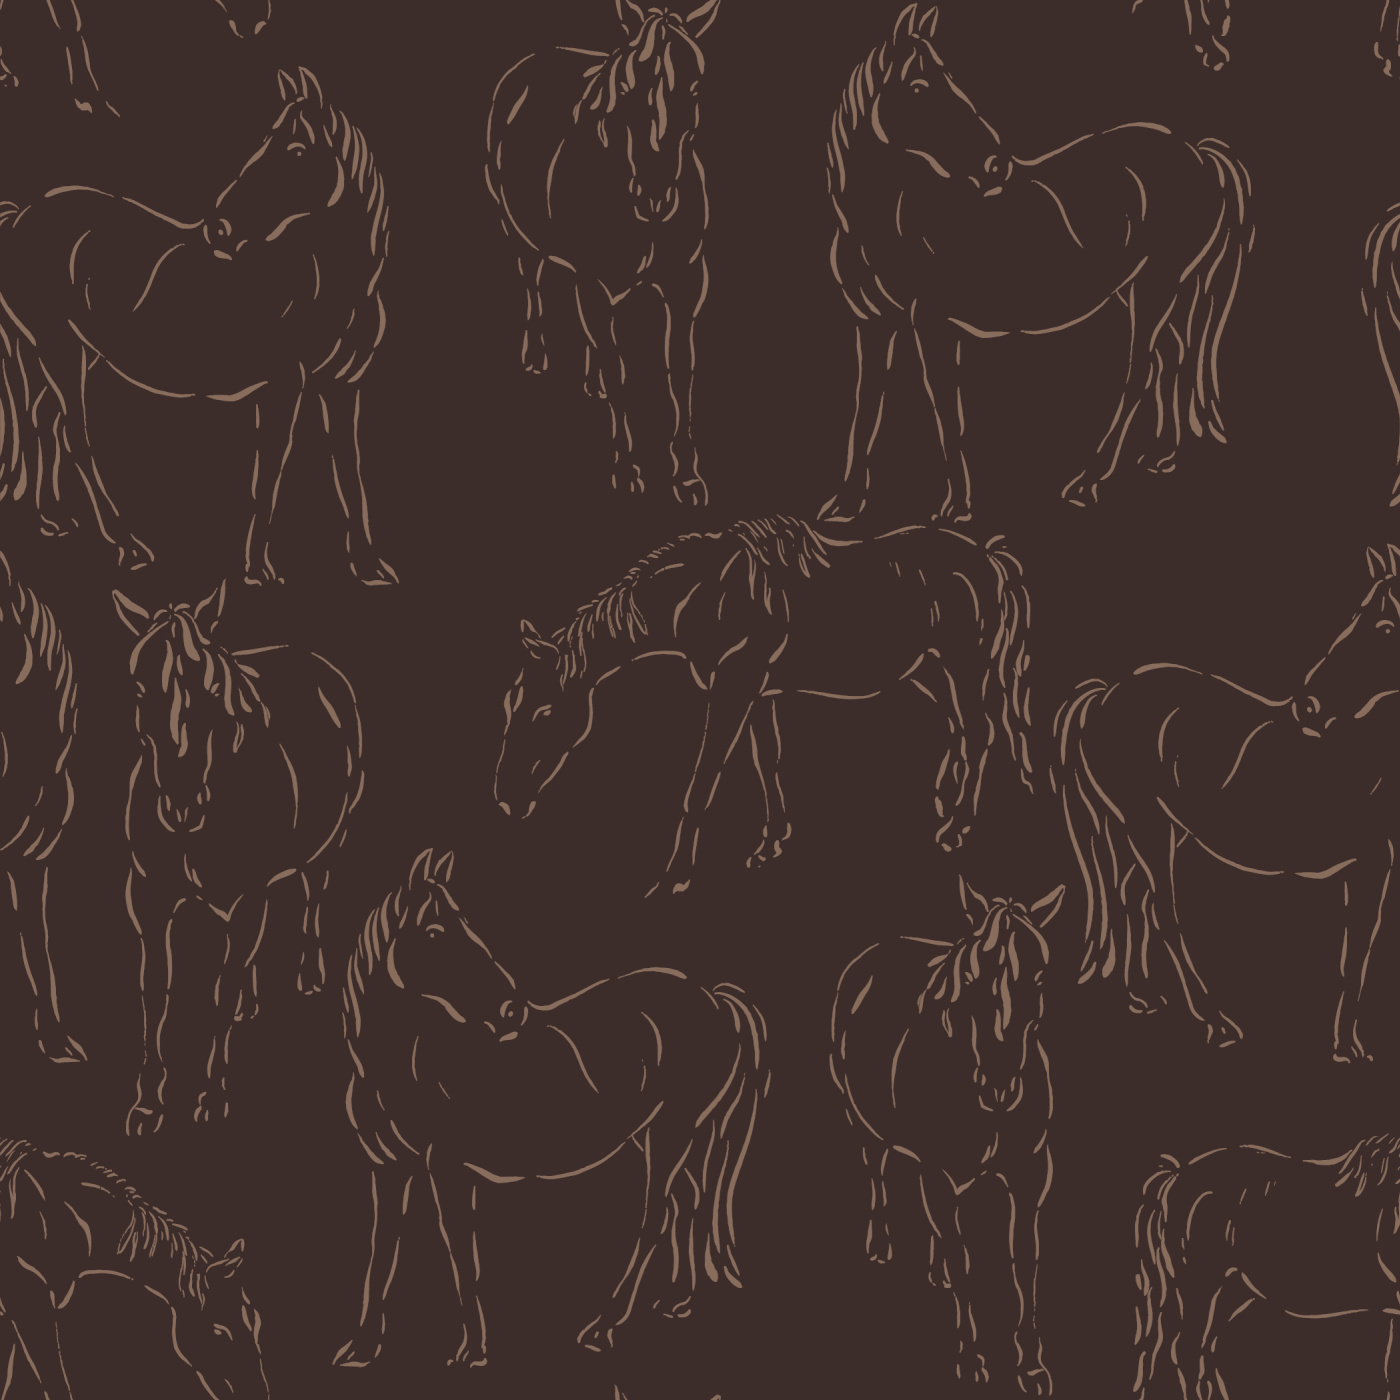 Free Horses Wallpaper